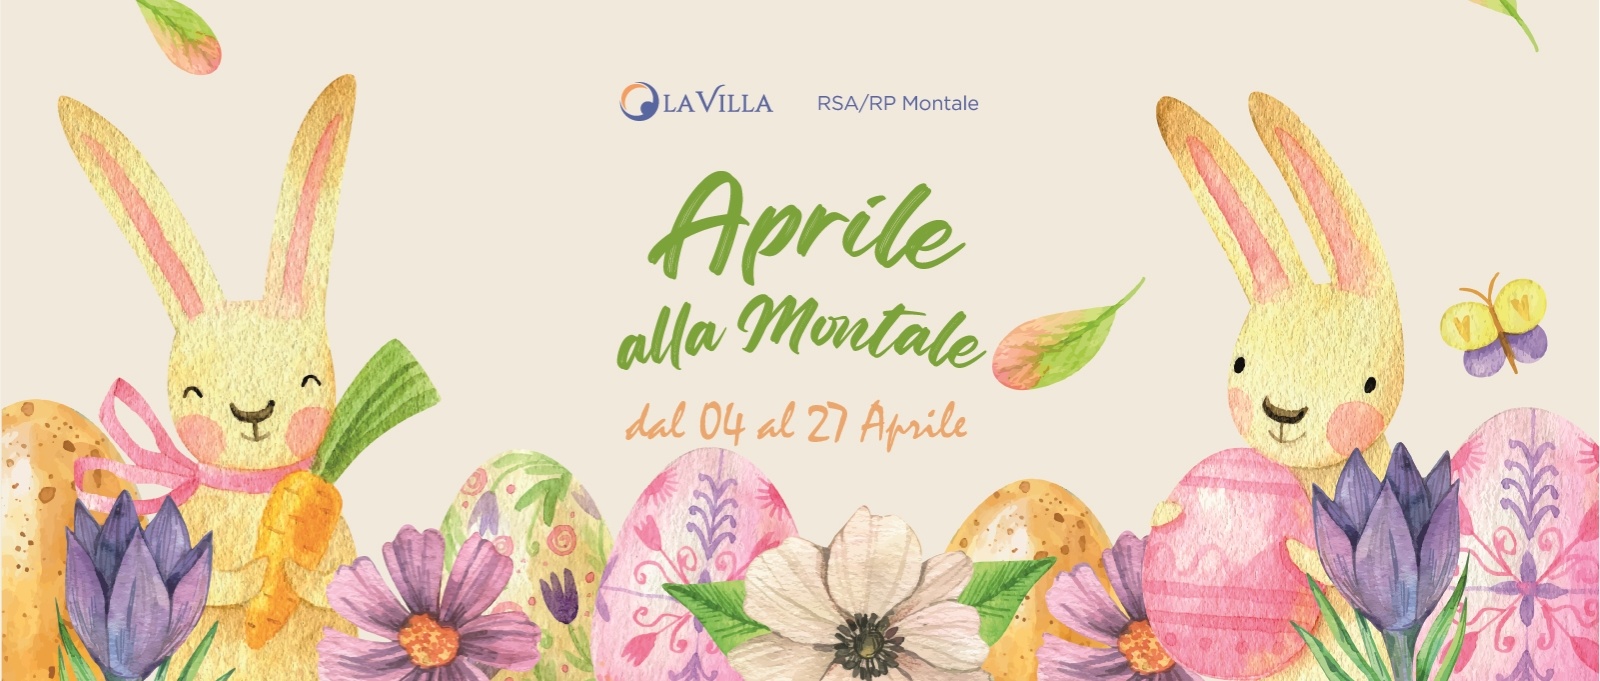 Aprile alla Montale: il programma di eventi in Rsa